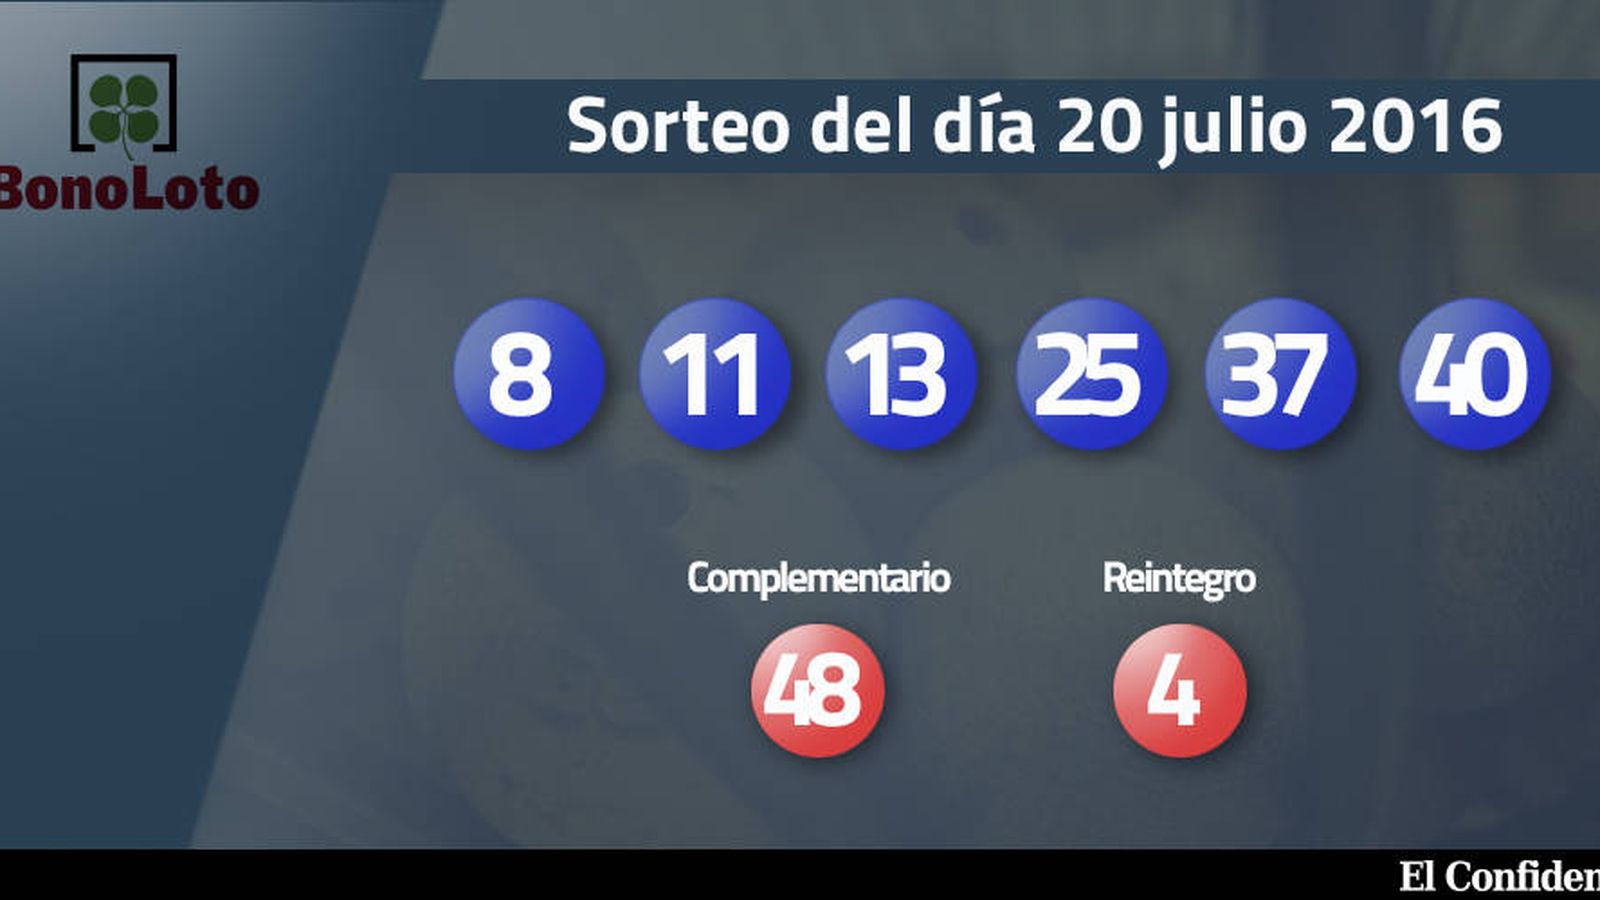 Foto: Resultados del sorteo de la Bonoloto del 20 julio 2016 (EC)